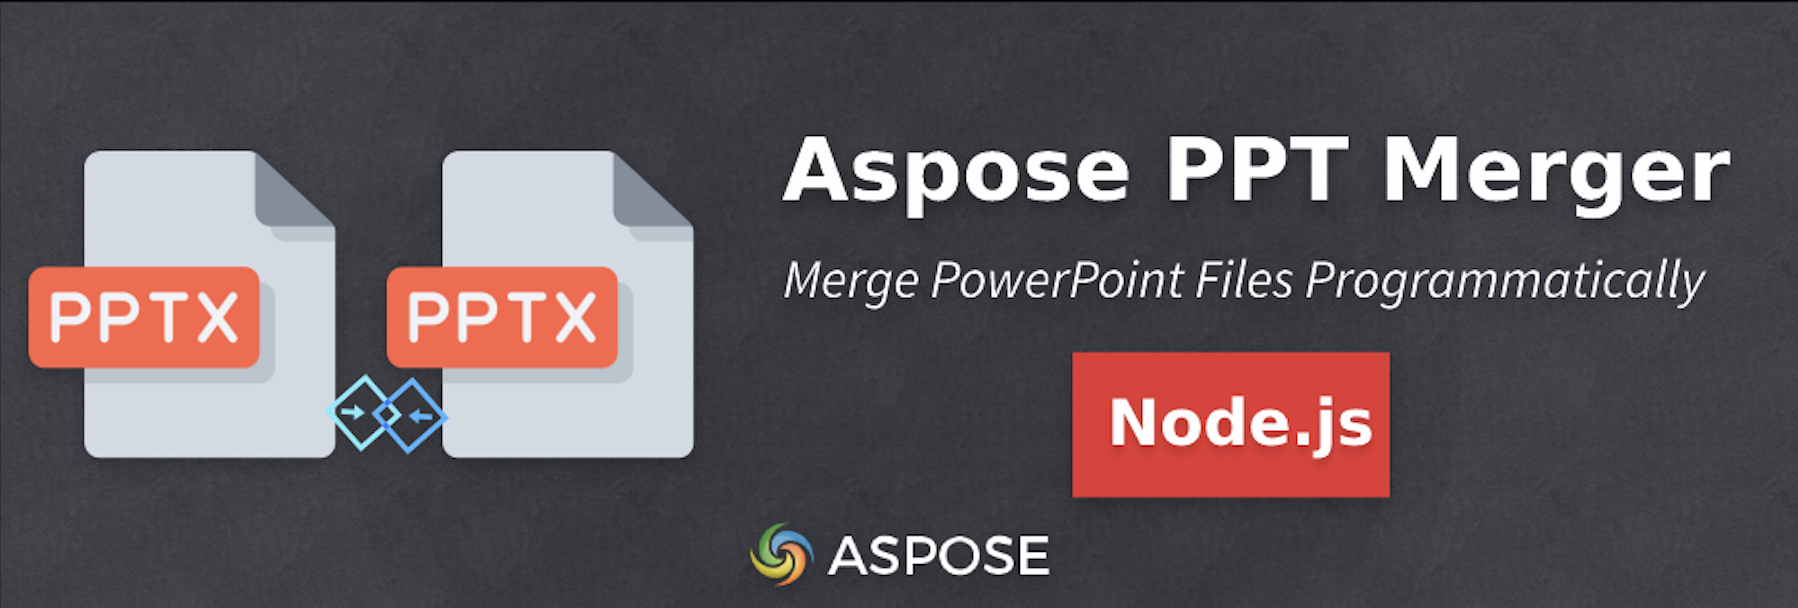 Kết hợp nhiều PowerPoint trong Node.js - Aspose PPT Merger